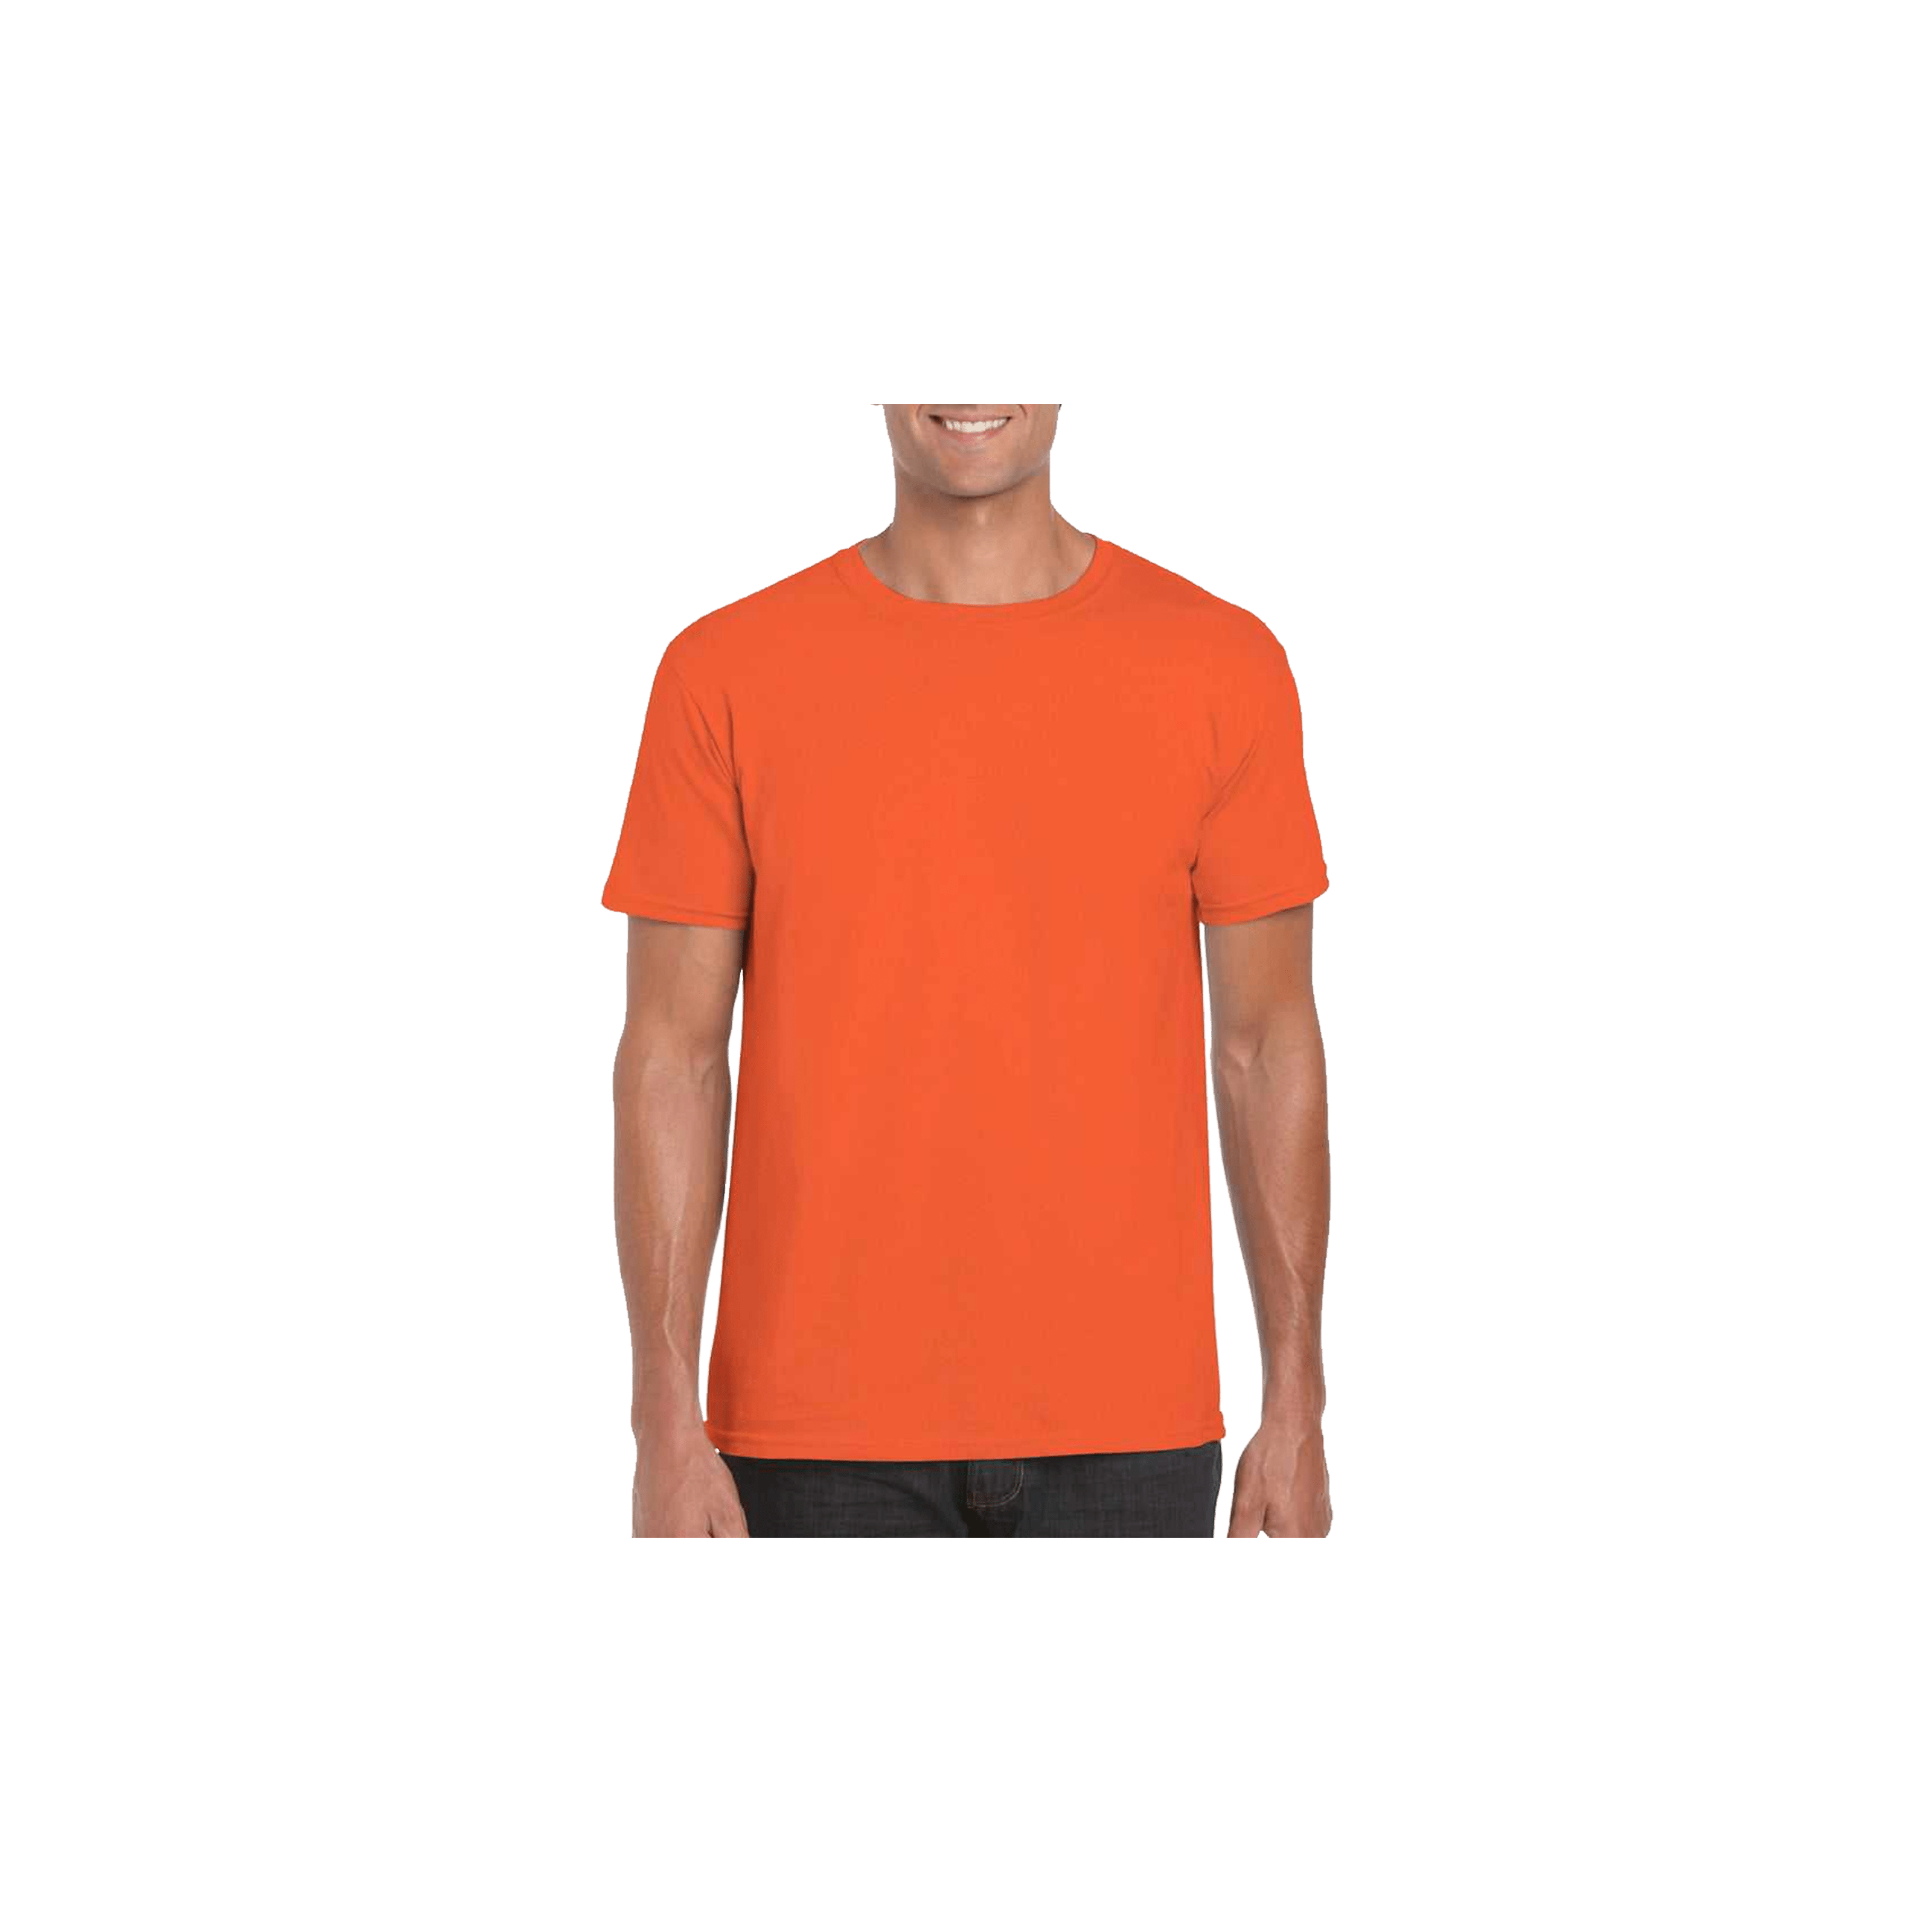 Softstyle - Orange